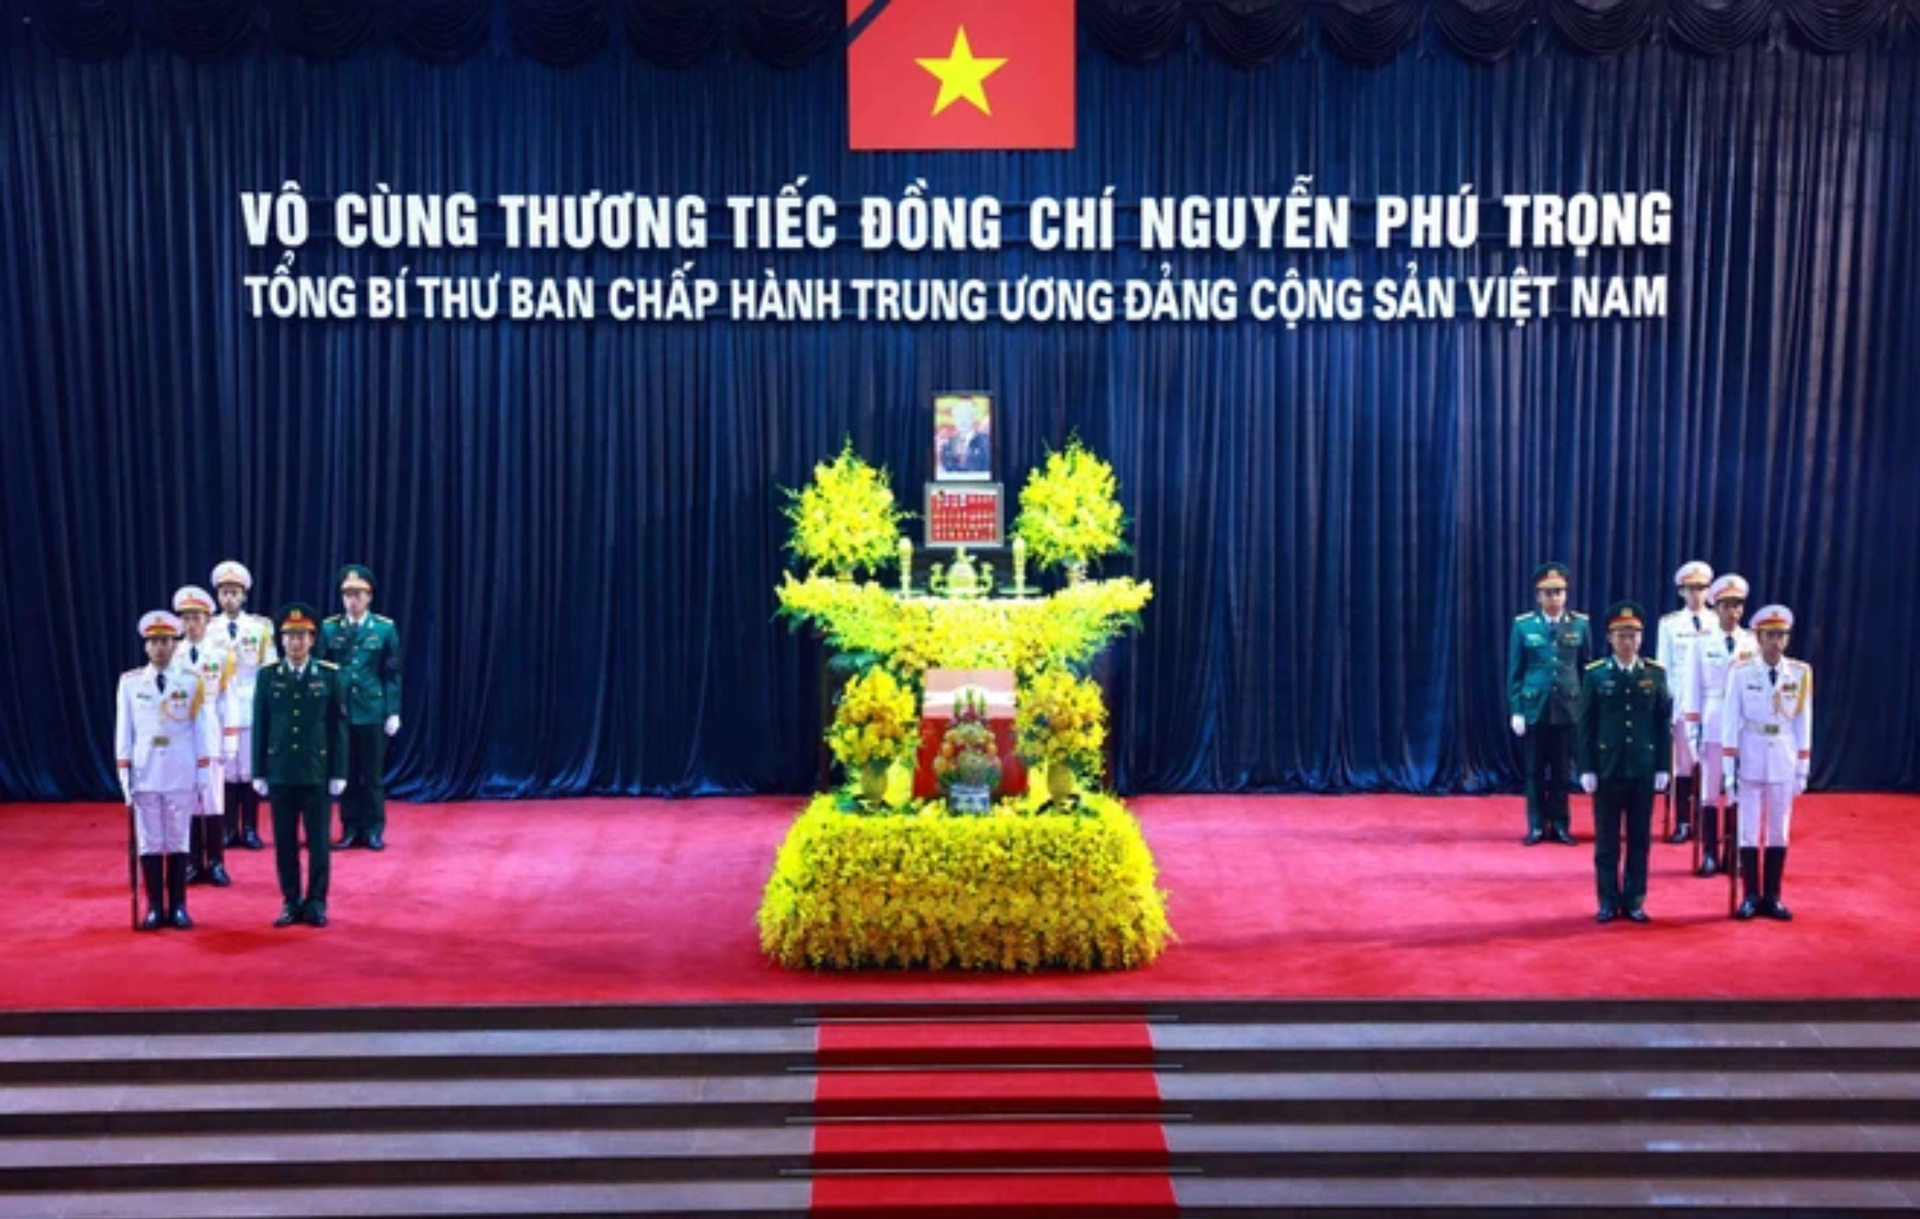 Linh cữu Tổng Bí thư Nguyễn Phú Trọng quàn tại Nhà tang lễ Quốc gia số 5 Trần Thánh Tông, Hà Nội